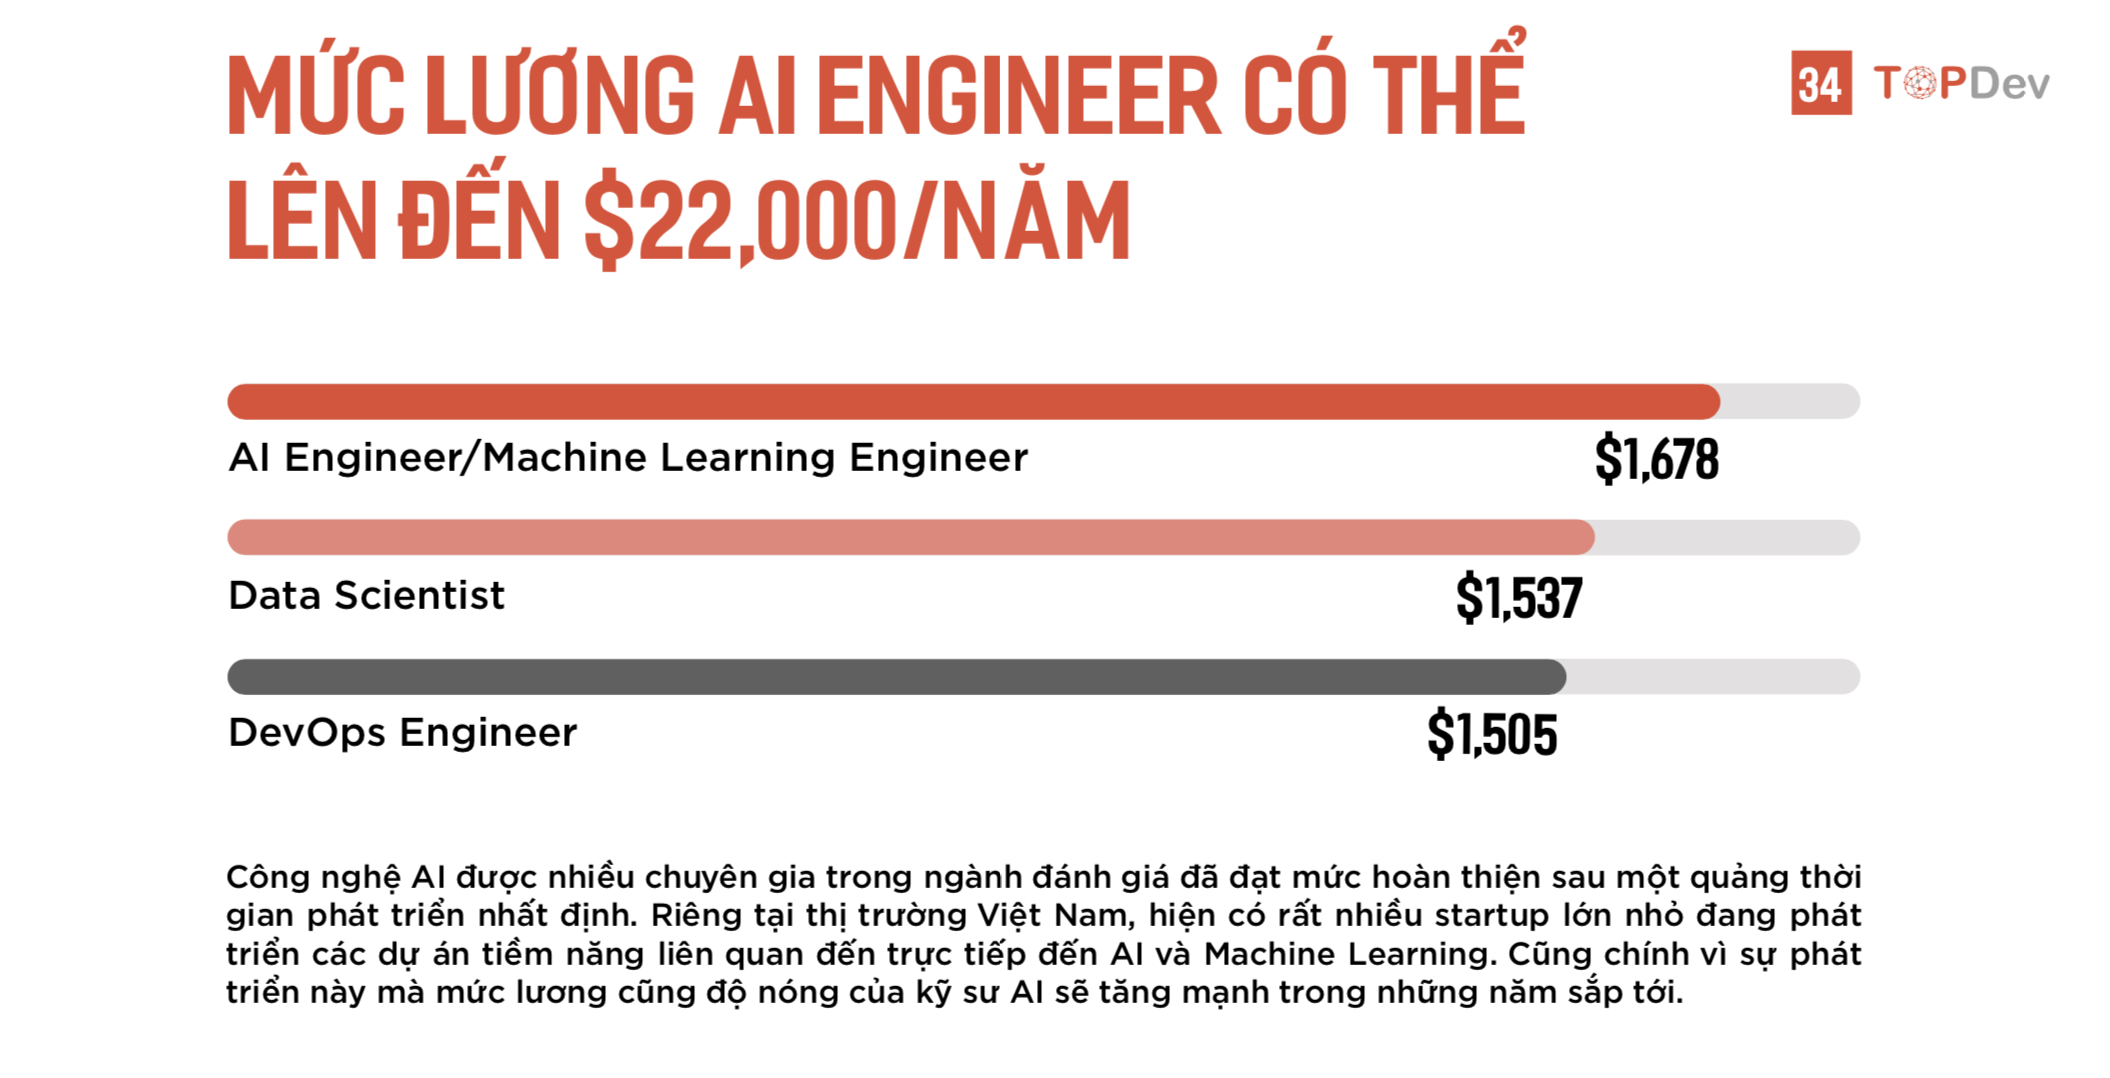 TopDev: "Làm kỹ sư AI, mức lương 500 triệu là bình thường"